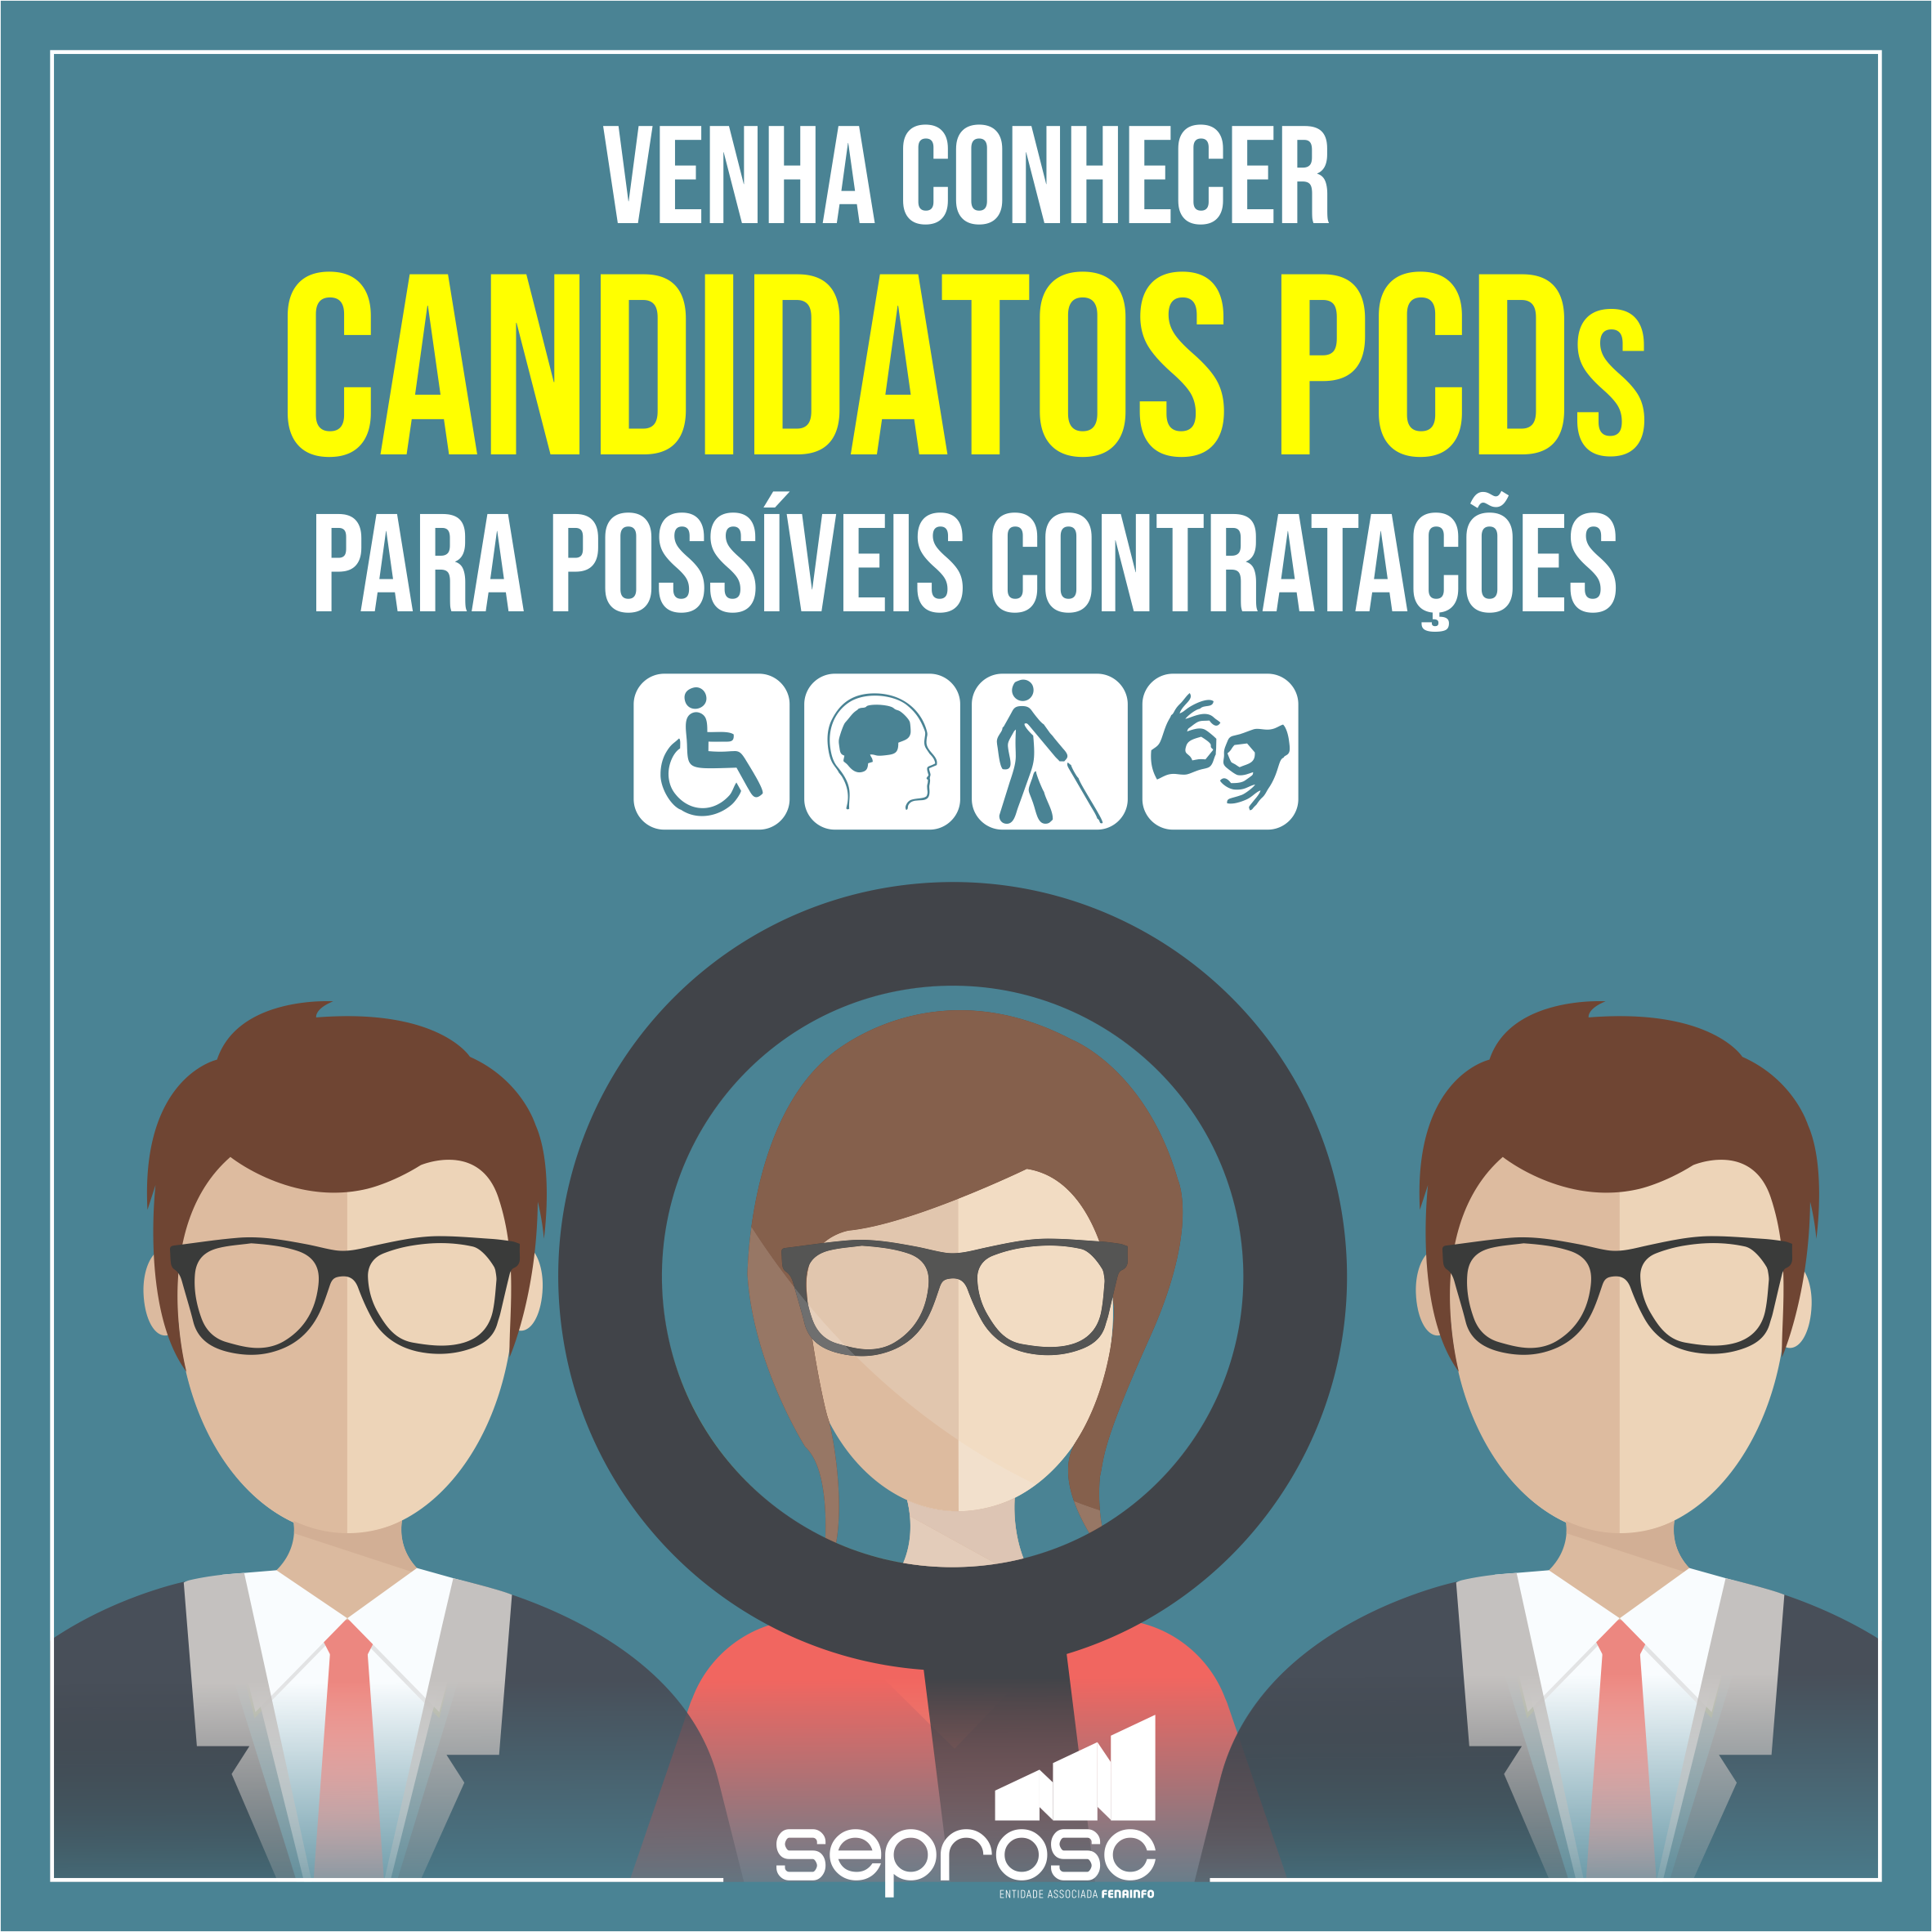 Venha conhecer candidatos PCDs para possíveis contratações 